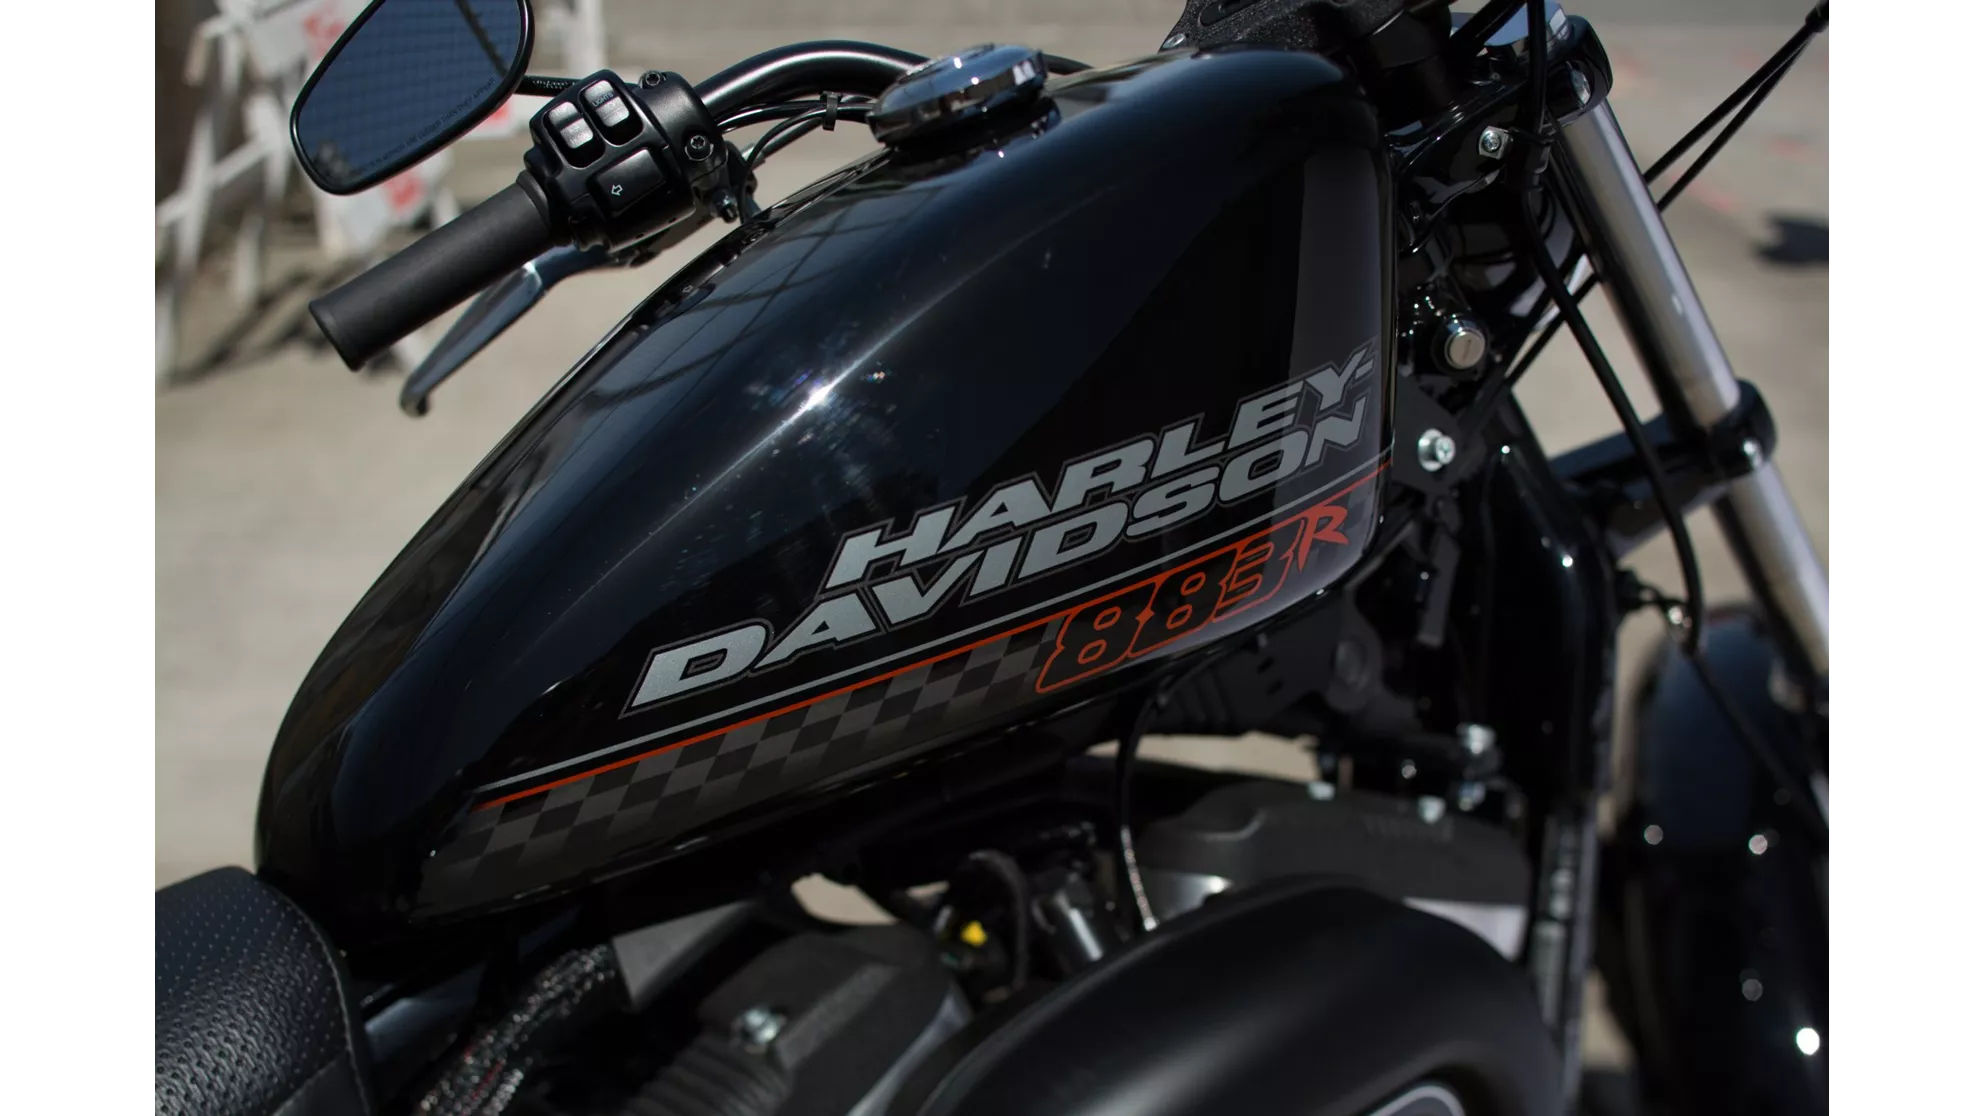 Harley-Davidson Sportster XL 883 R Roadster - Image 1